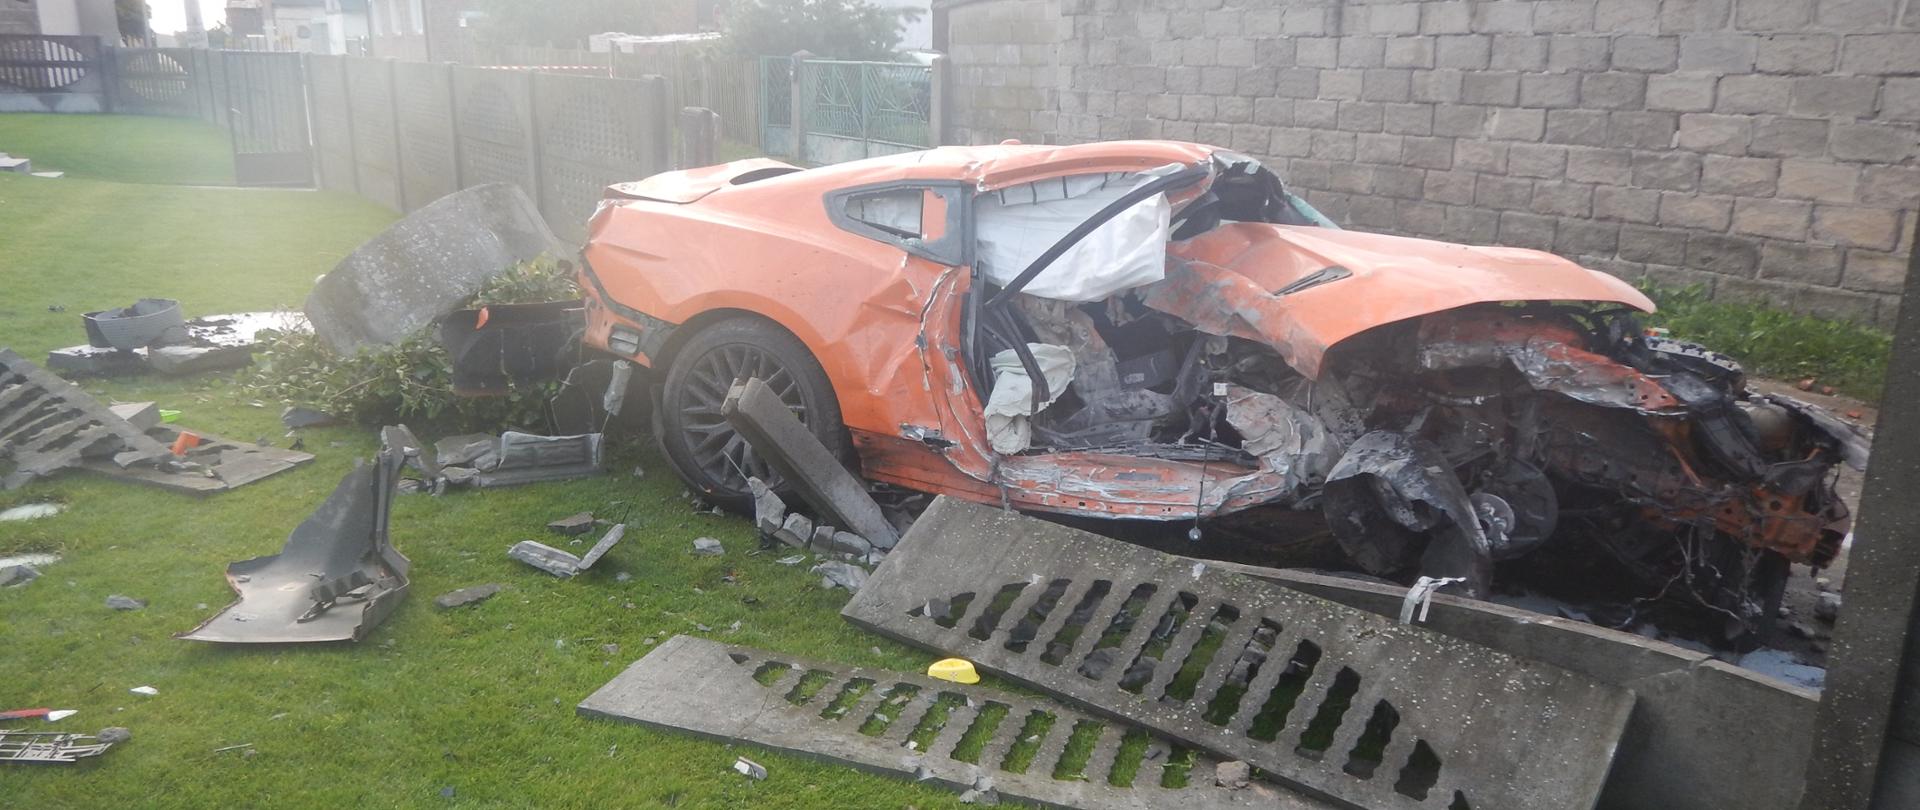 Zdjęcie przedstawia pomarańczowy samochód osobowy po wypadku drogowym.